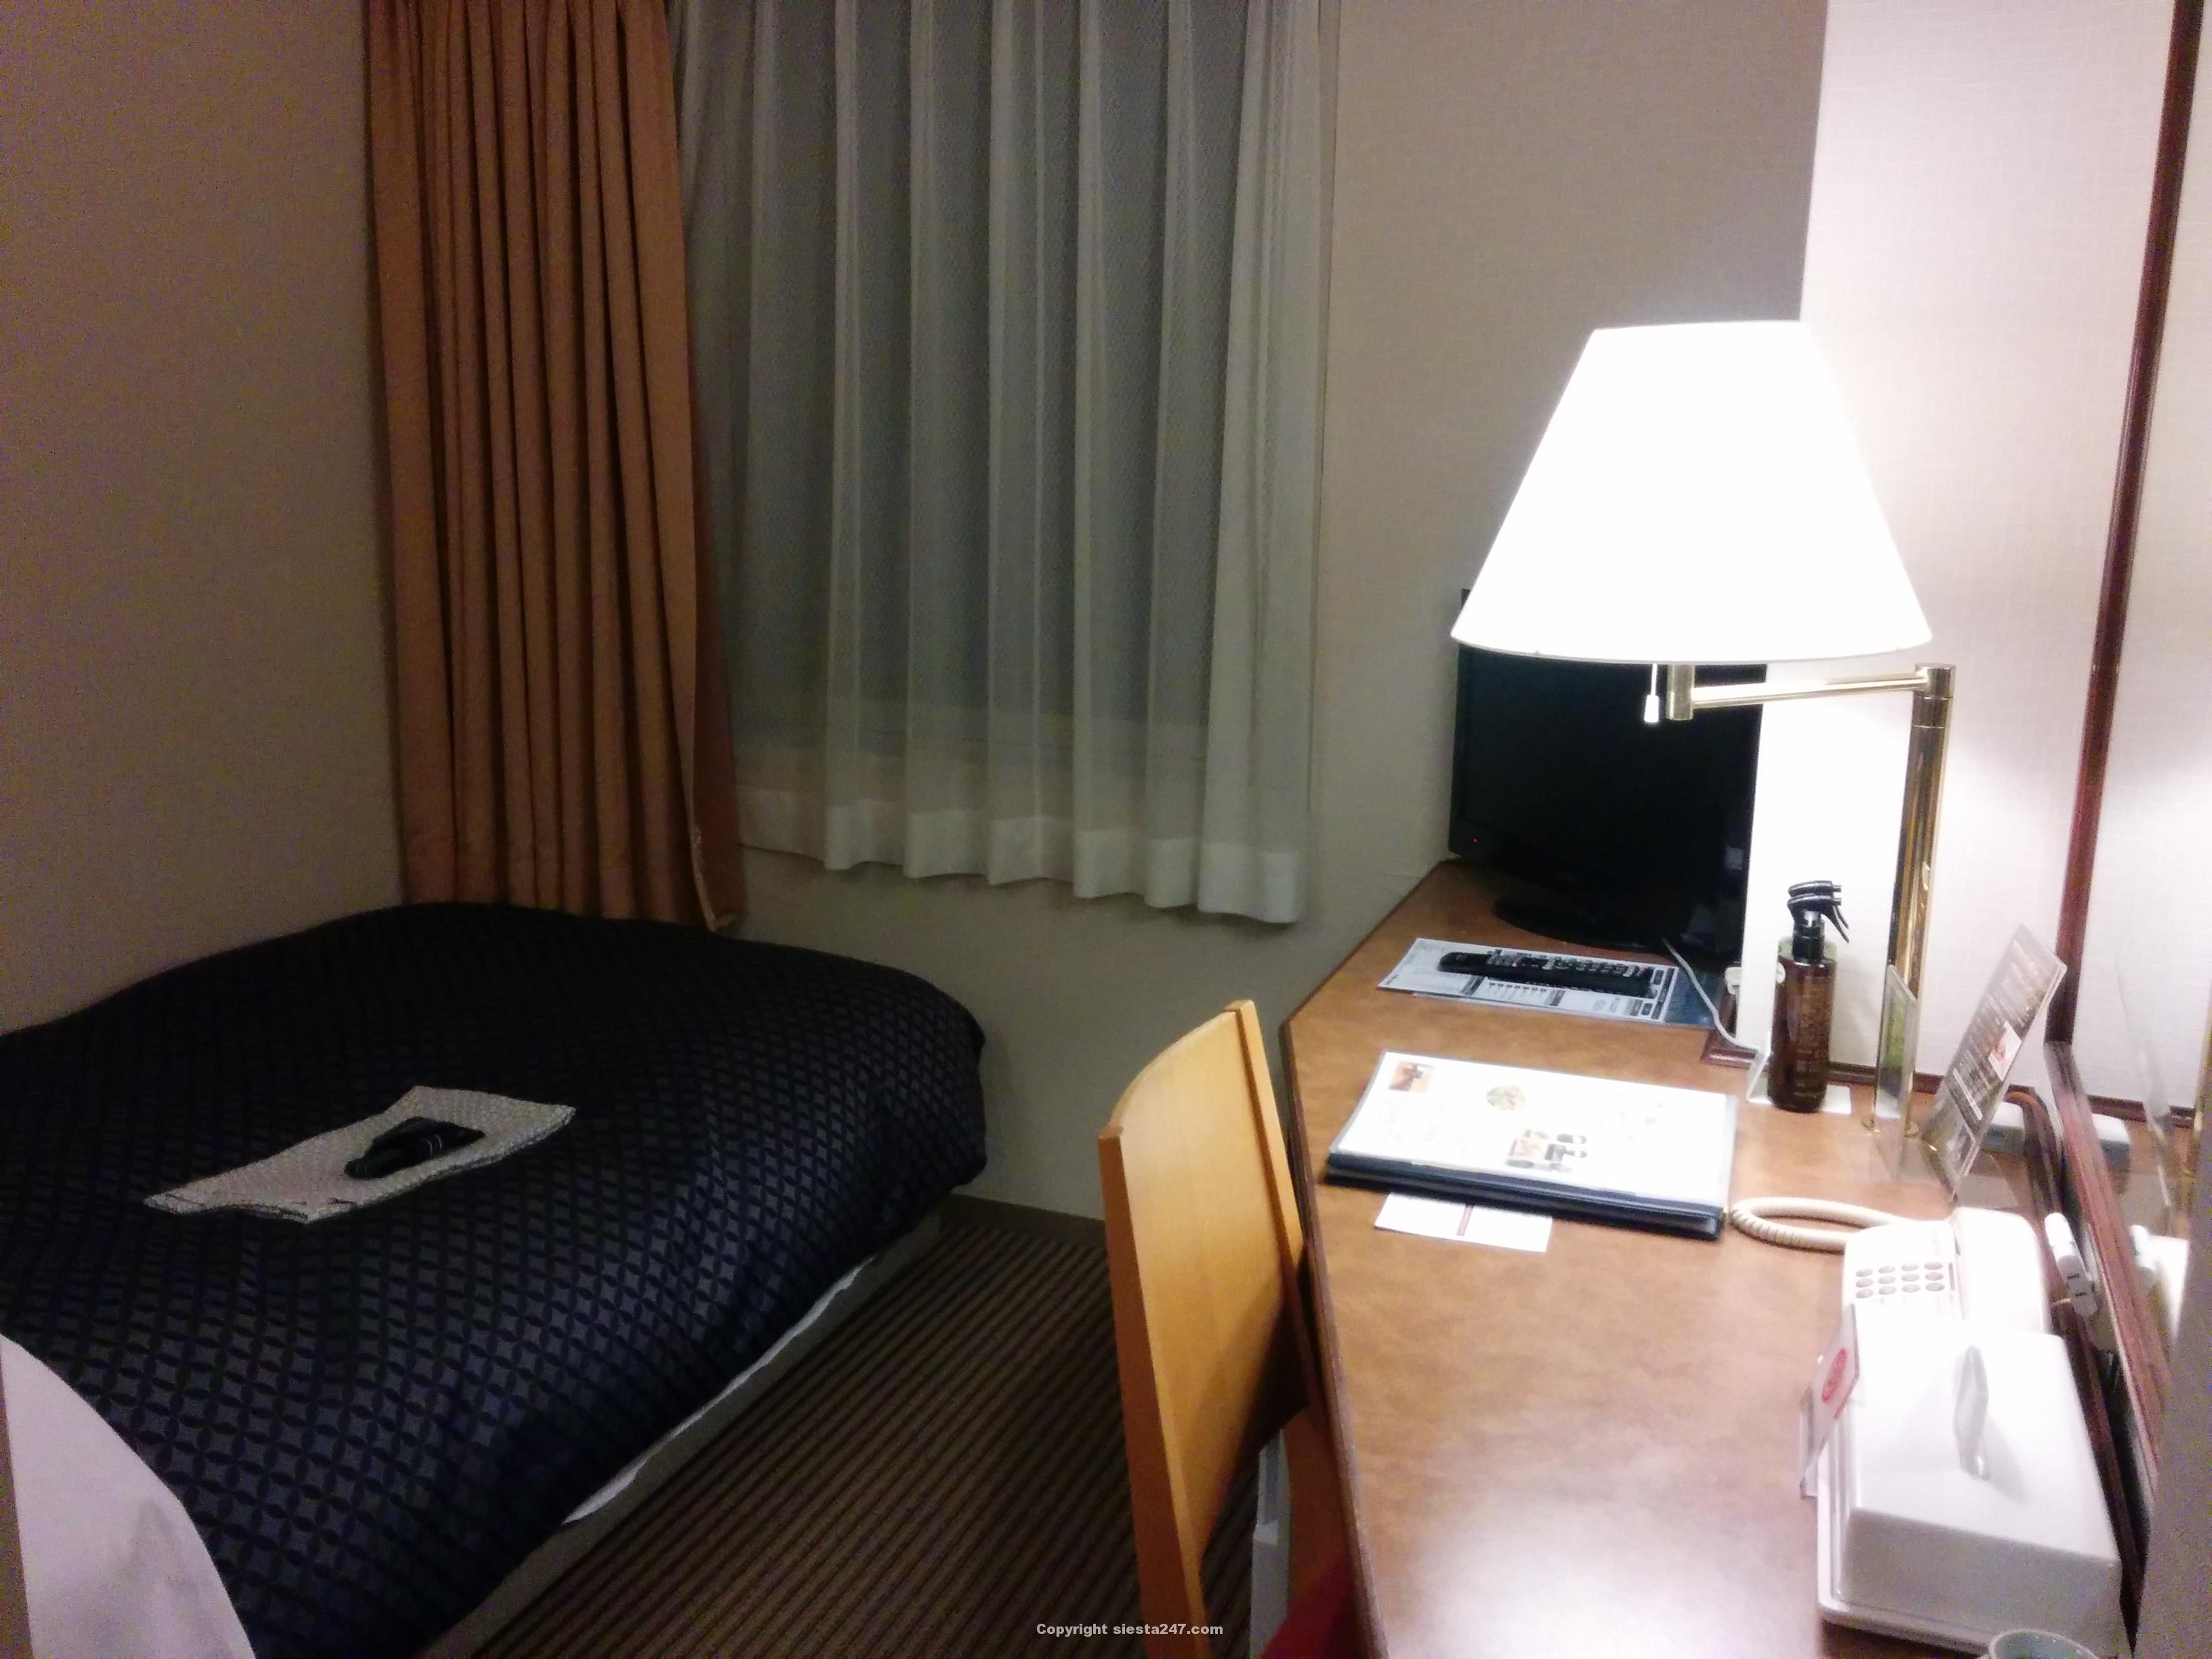 銀座キャピタルホテル本館シングルルームです。